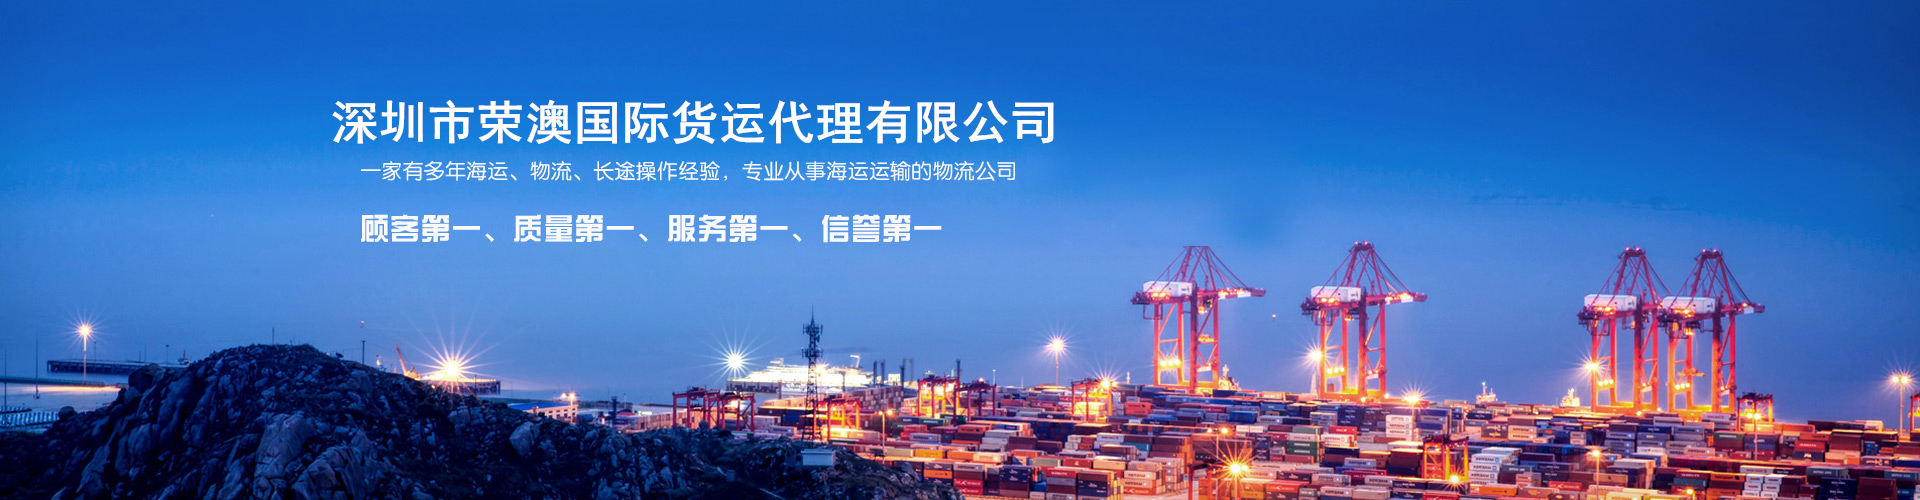 广州搬家海运澳洲要注意什么 深圳市荣澳国际货运代理有限公司